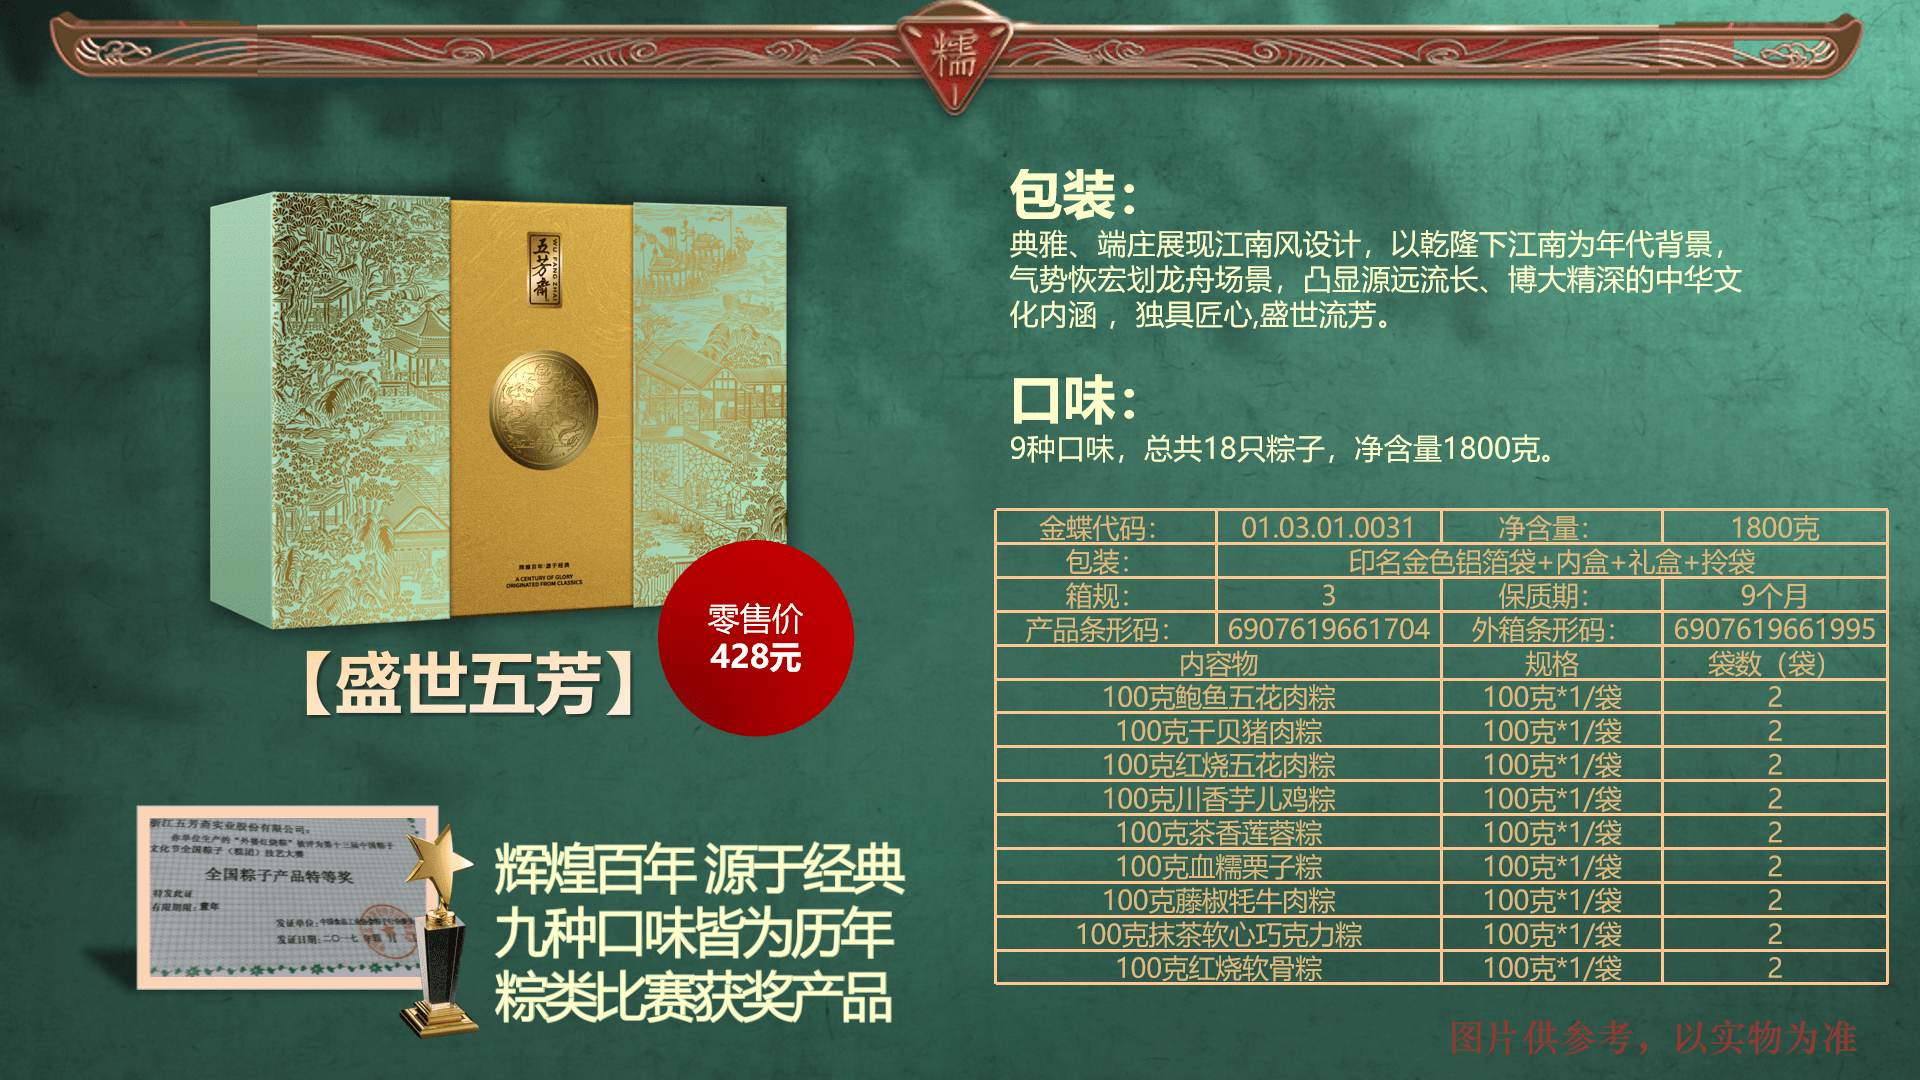 2022年端午节五芳斋粽子礼盒产品展示!